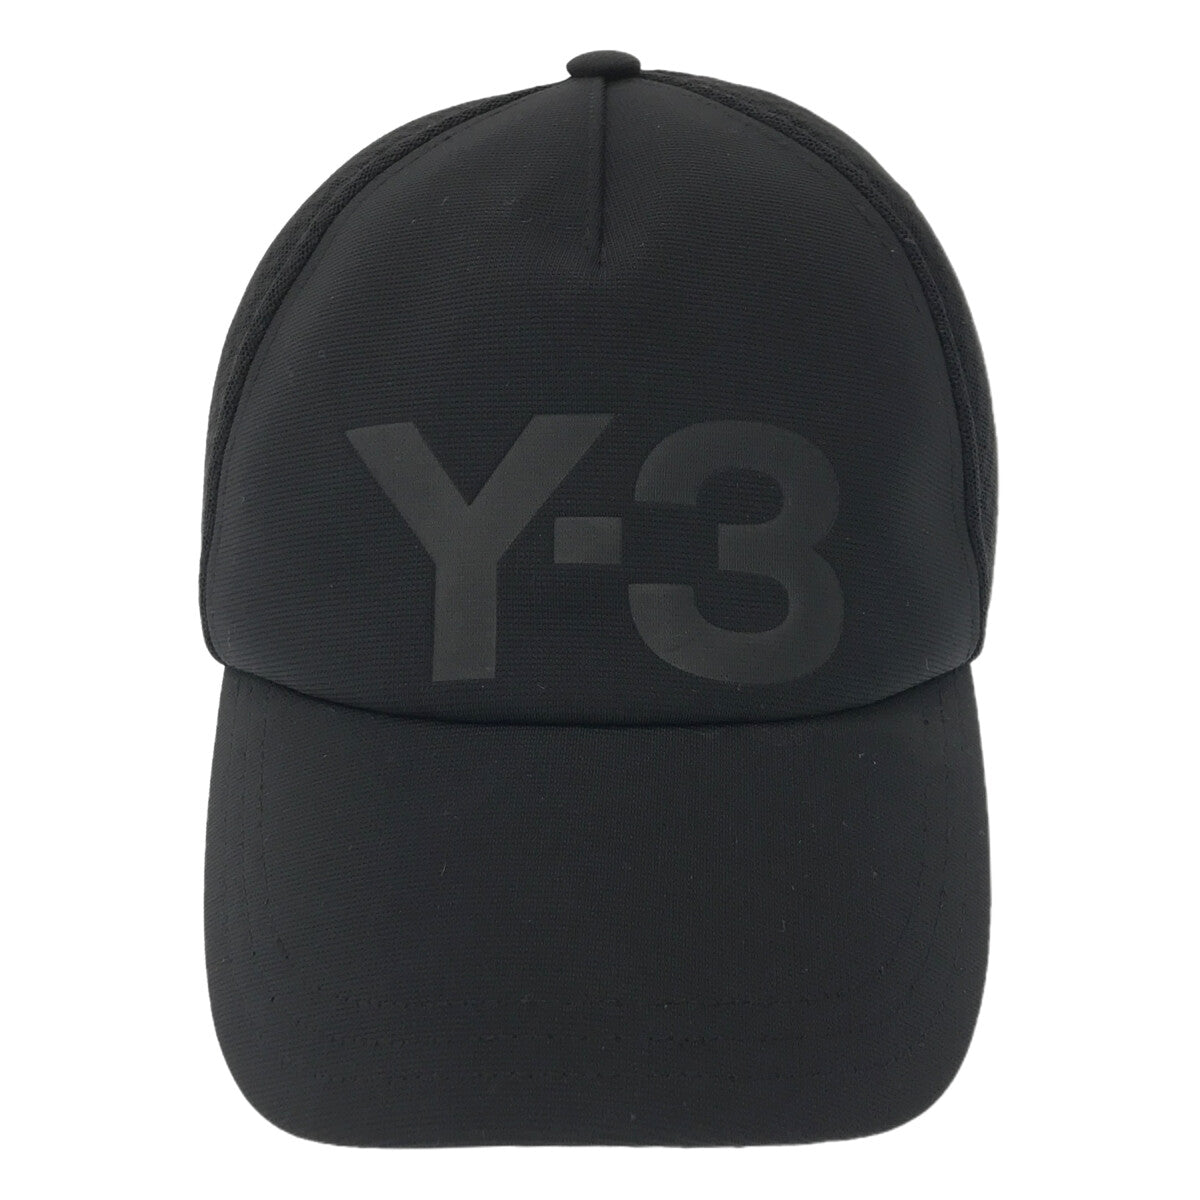 Y-3 / ワイスリー | TRUCKER CAP ロゴ トラッカーキャップ | ブラック | メンズ